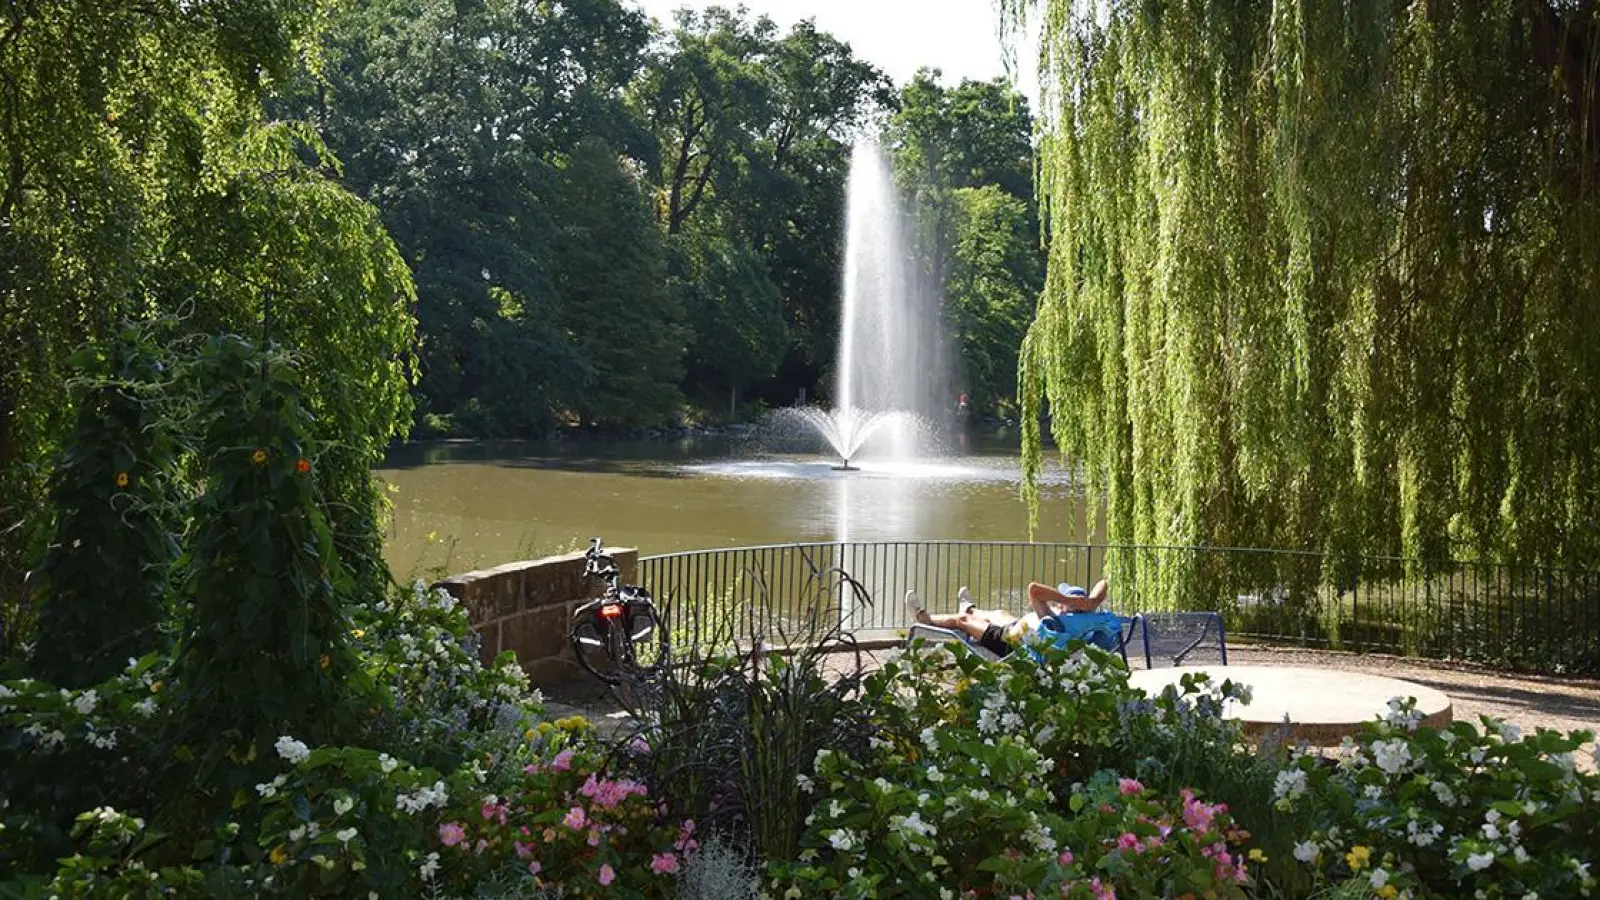 Der Röhrensee in Bayreuth: Die Bäume brauchen dringend Wasser. Die Fontäne führt den Fischen im See Sauerstoff zu. (Foto: Lenkeit)